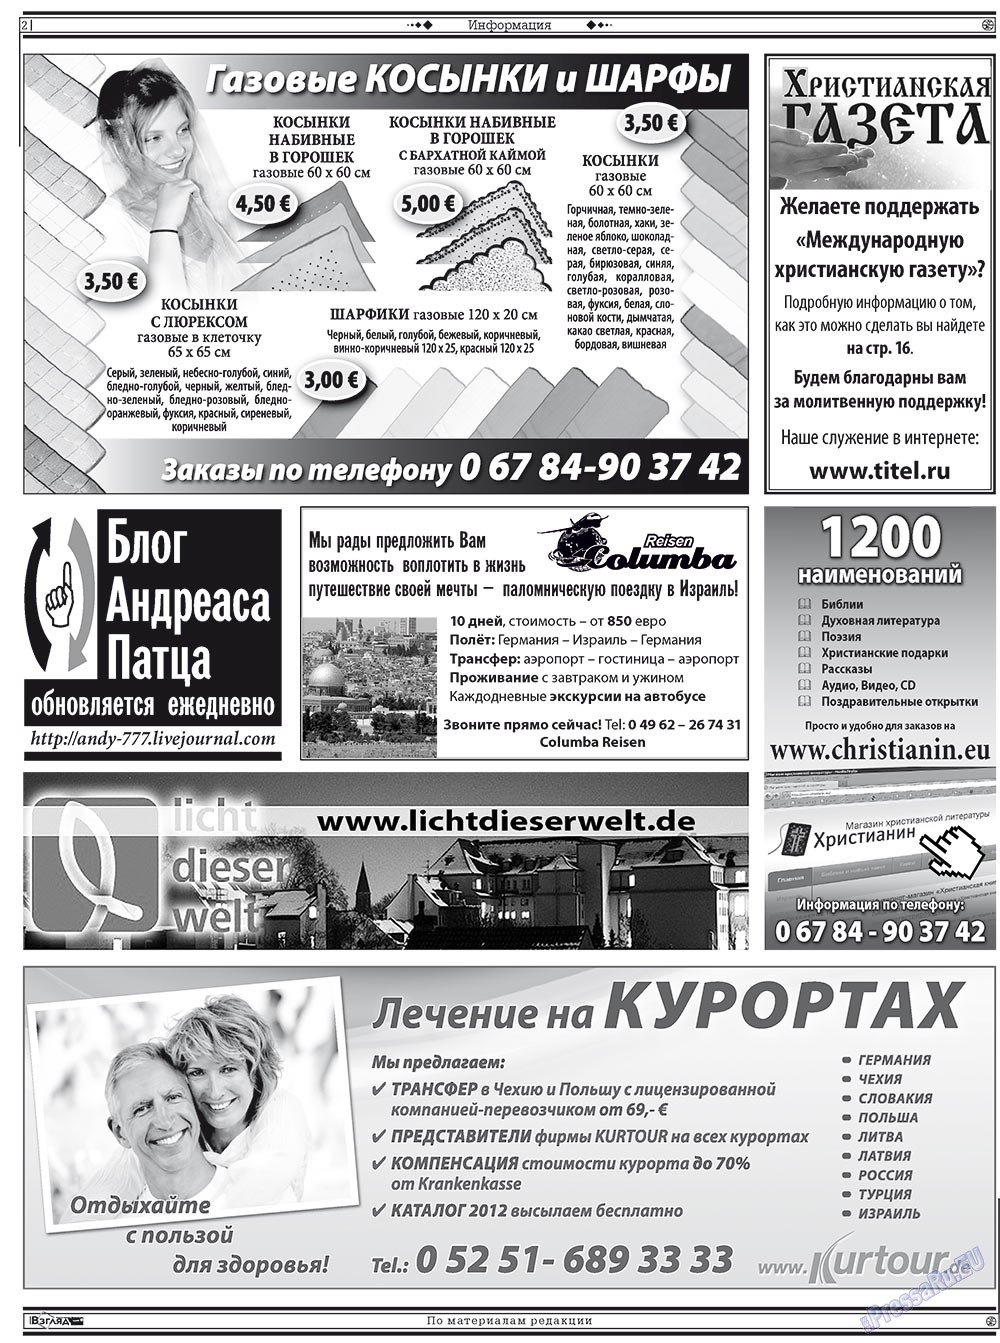 Христианская газета (газета). 2012 год, номер 5, стр. 16